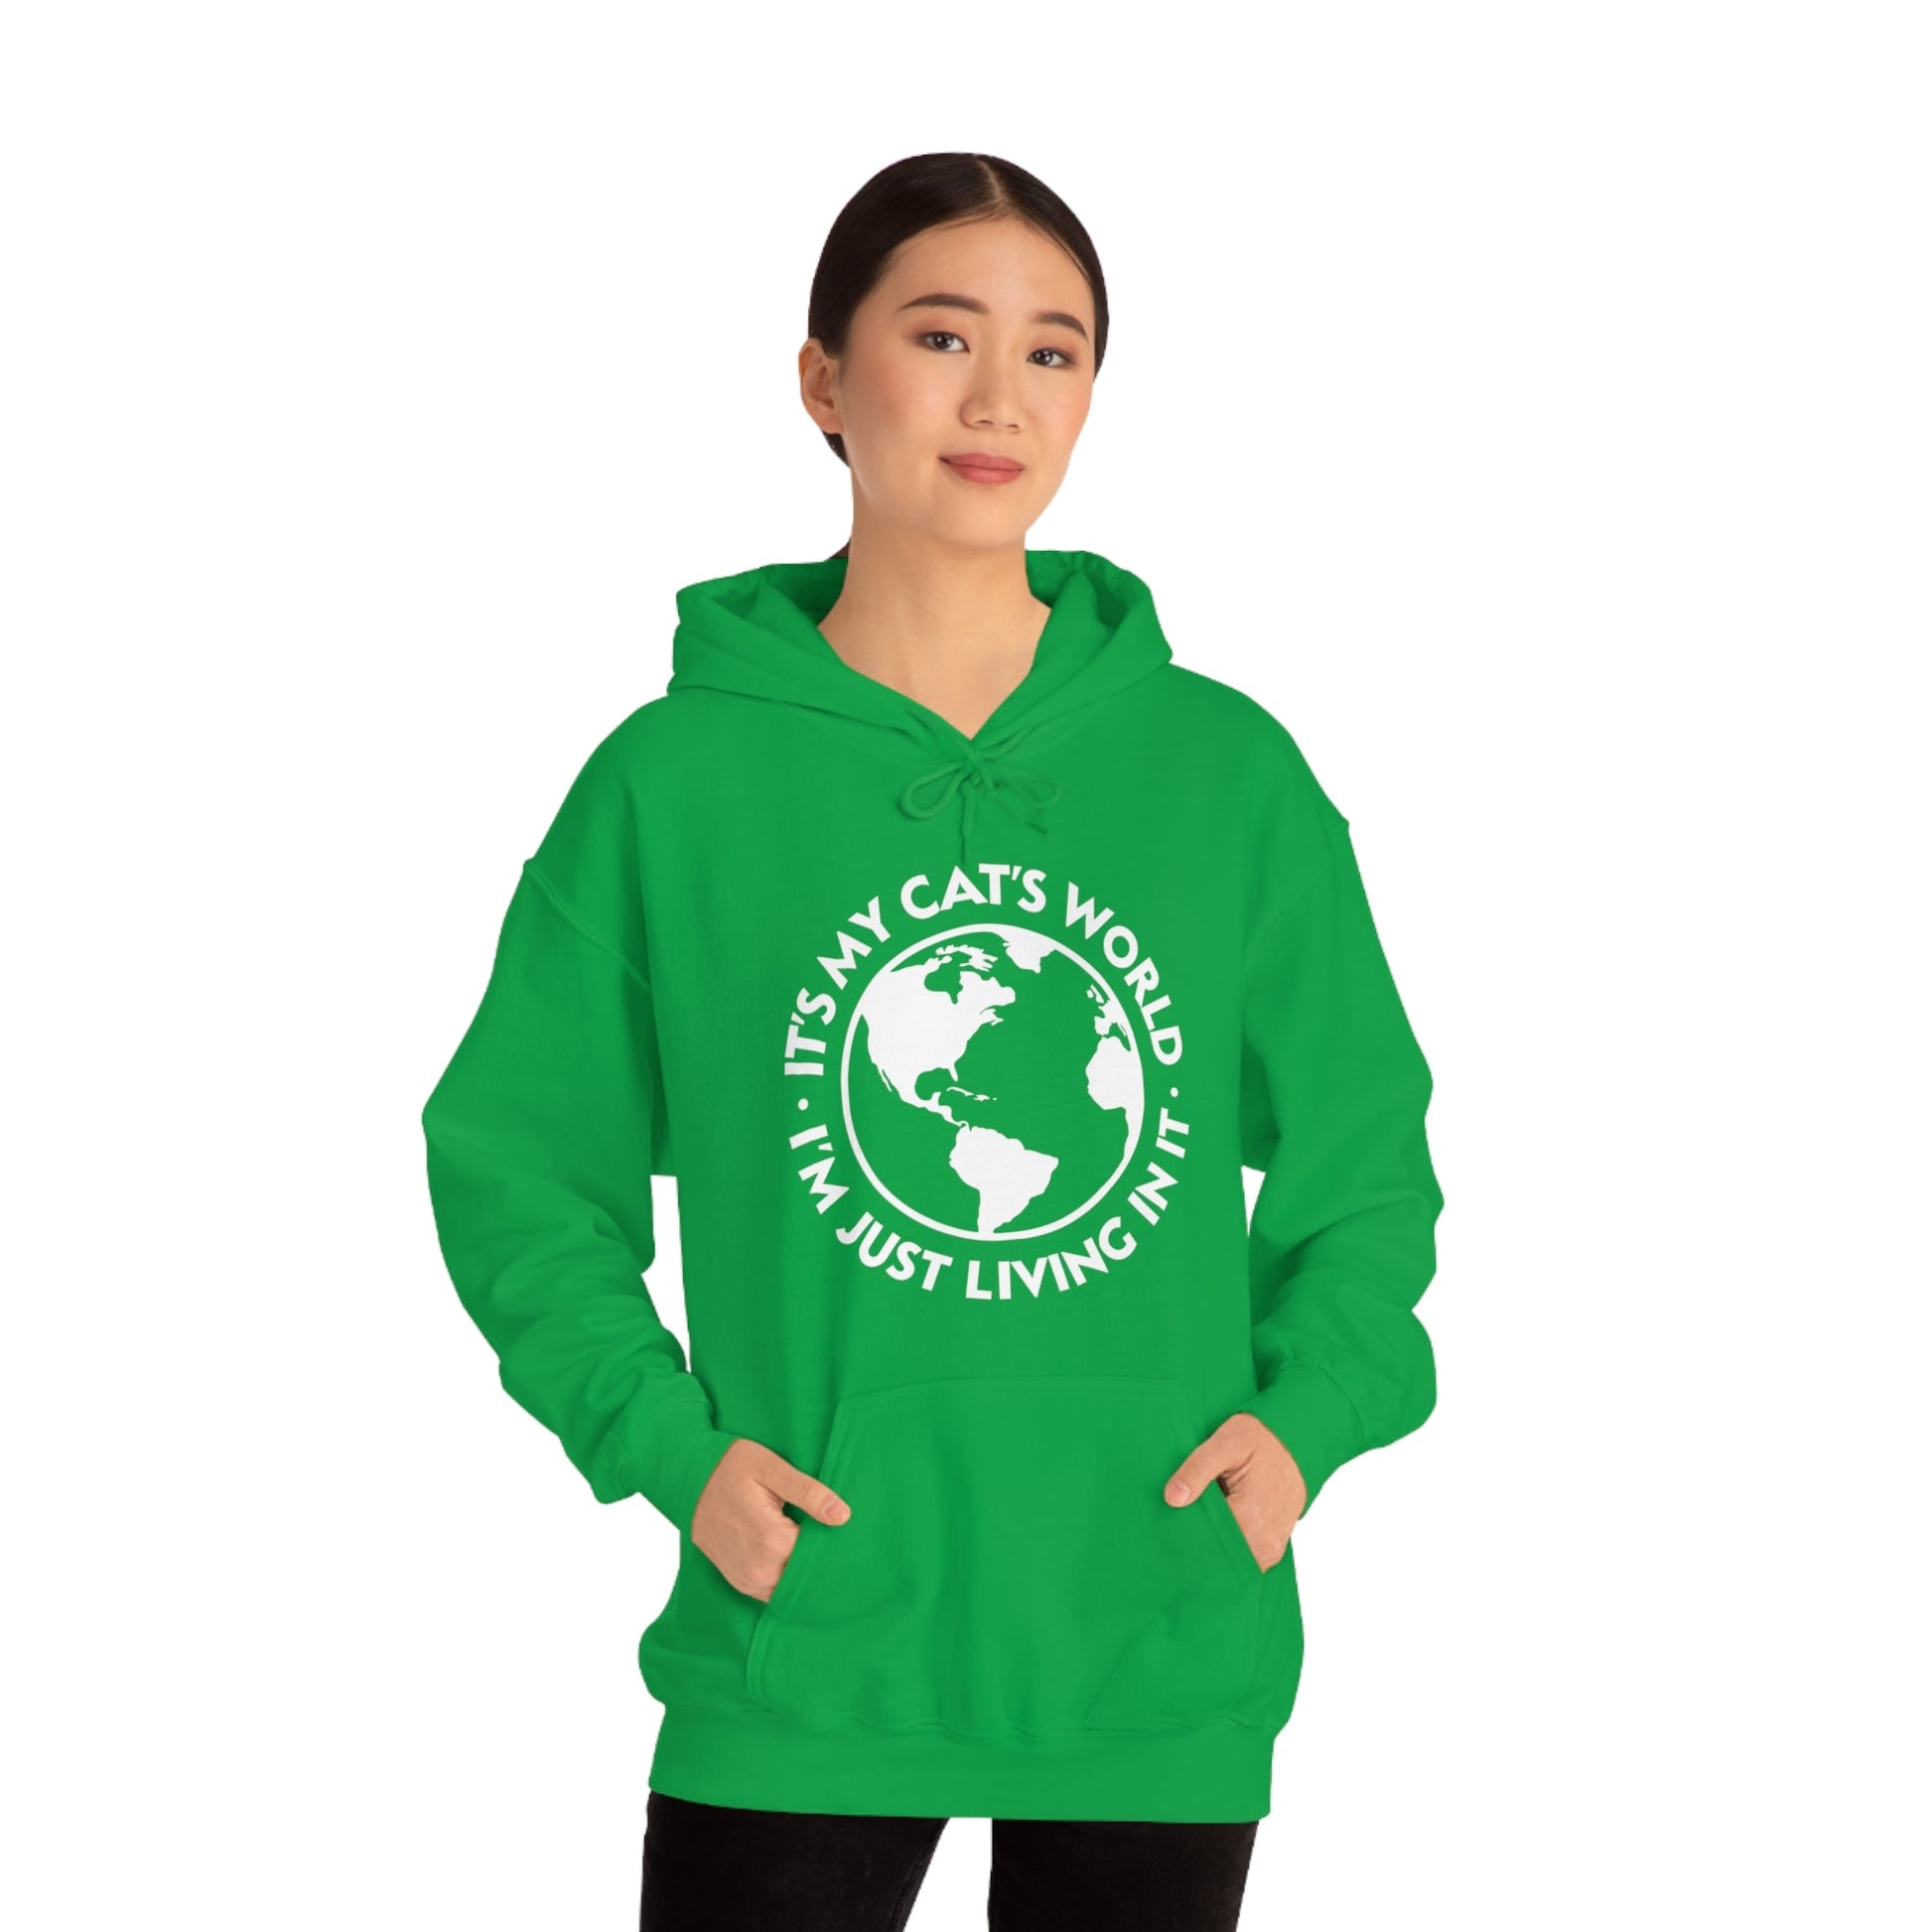 It's My Cat's World | Hooded Sweatshirt - Detezi Designs-63507342070272562365